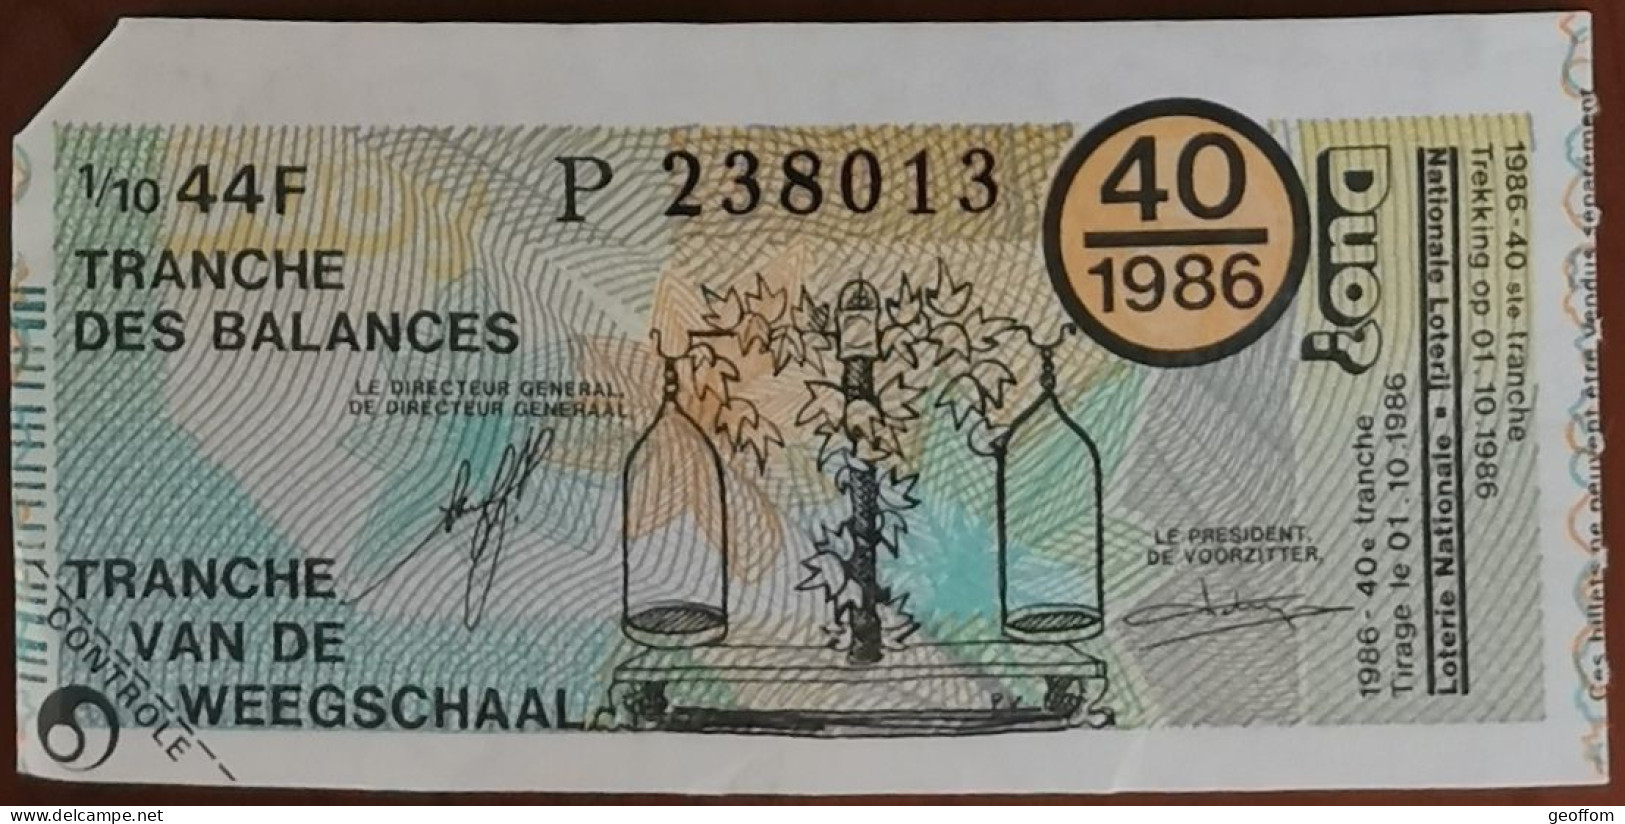 Billet De Loterie Nationale Belgique 1986 40e Tranche Des Balances - 1-10-1986 - Billetes De Lotería